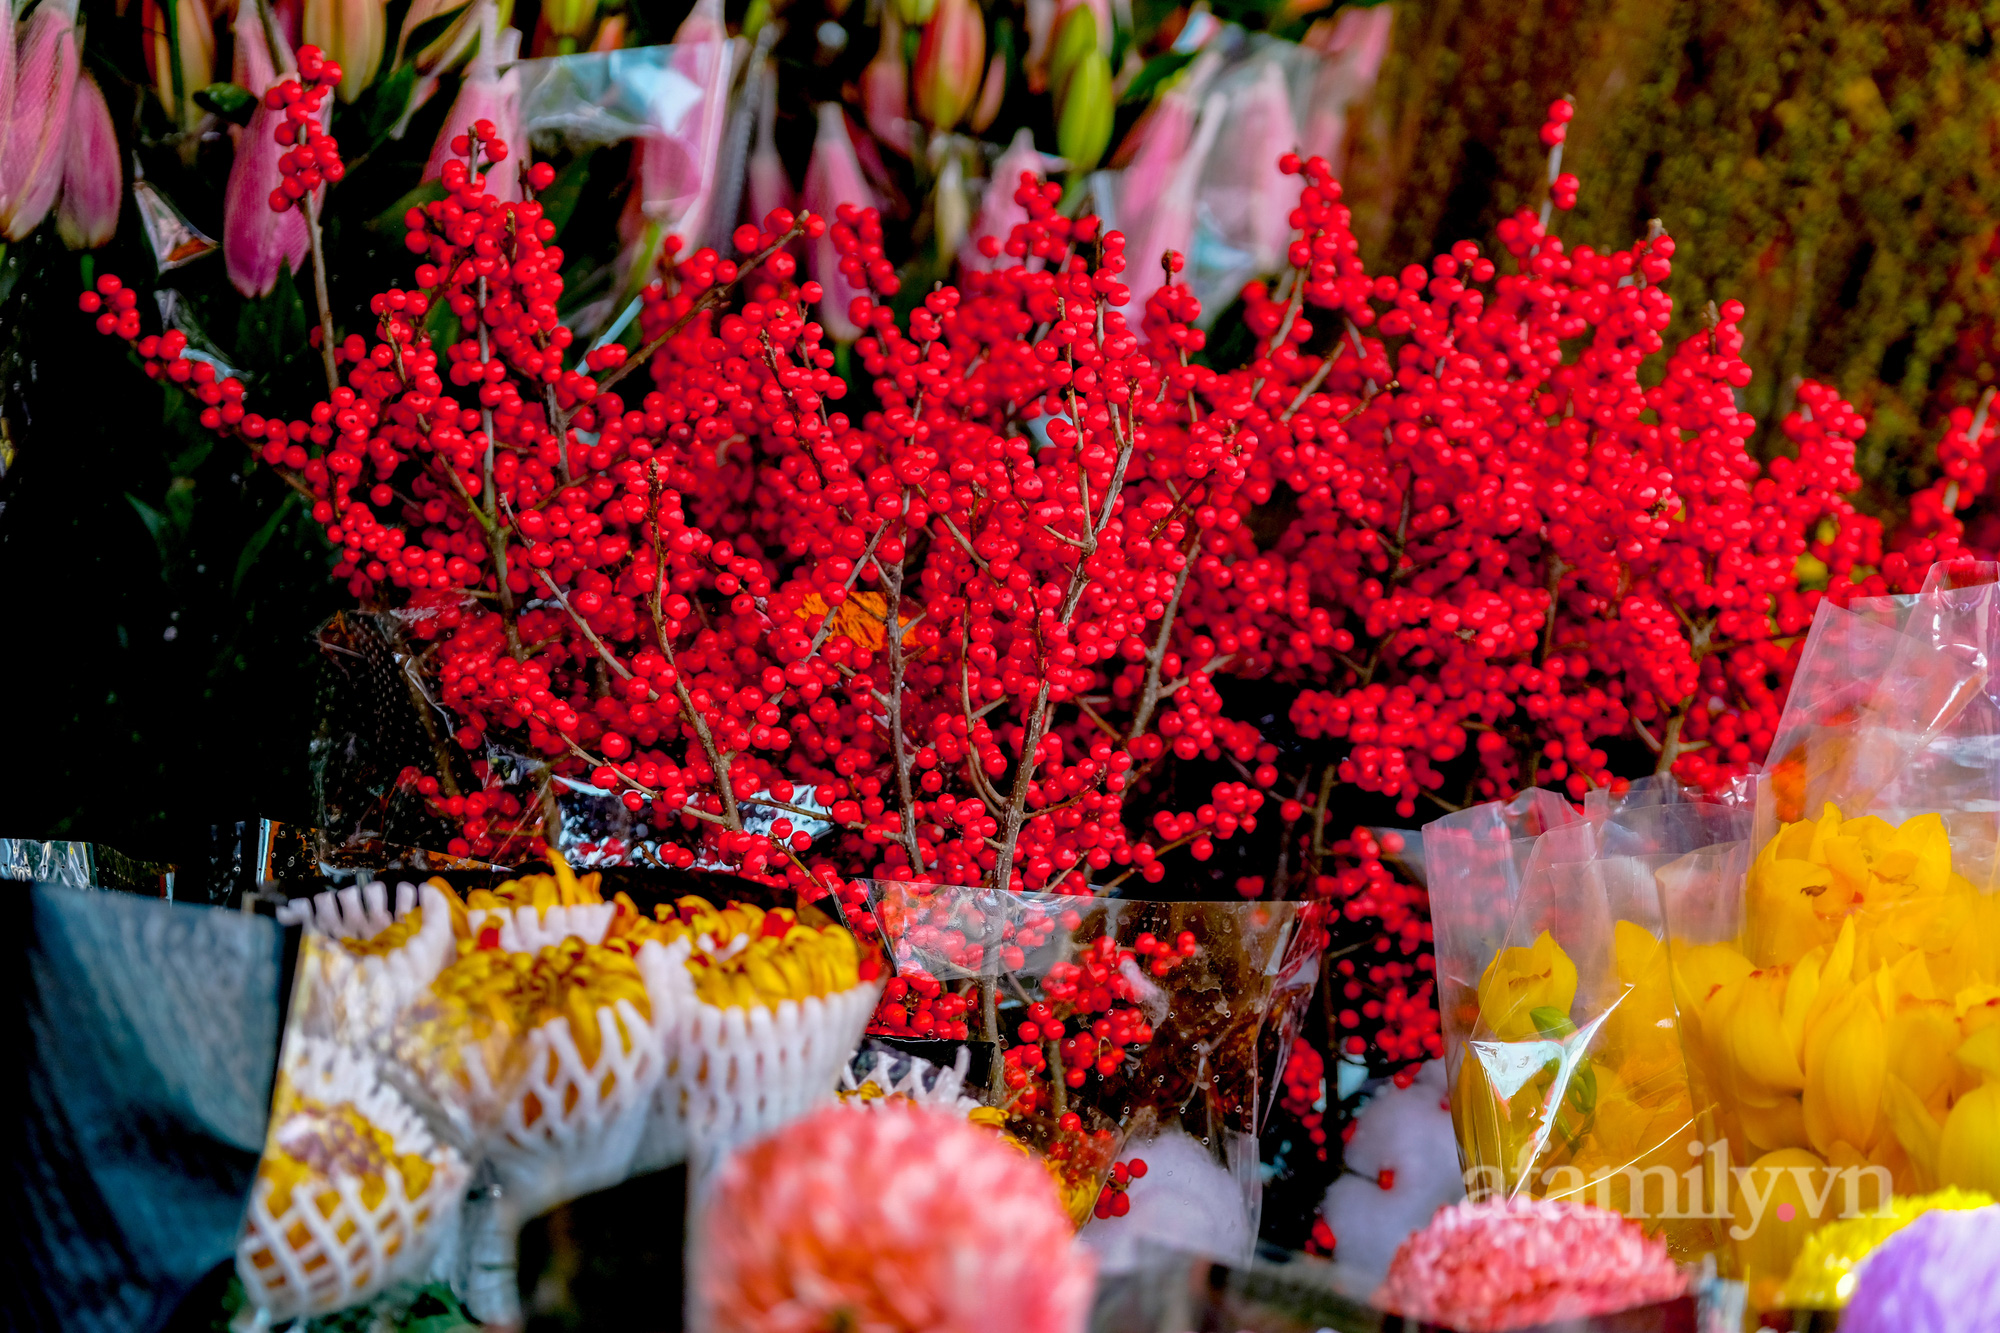 29 Tết đi chợ hoa Quảng Bá: Giá hoa tăng 20% so với ngày thường, mua nhanh 5 cành đào đông cắm đẹp nhà mà hết 2,2 triệu - Ảnh 13.